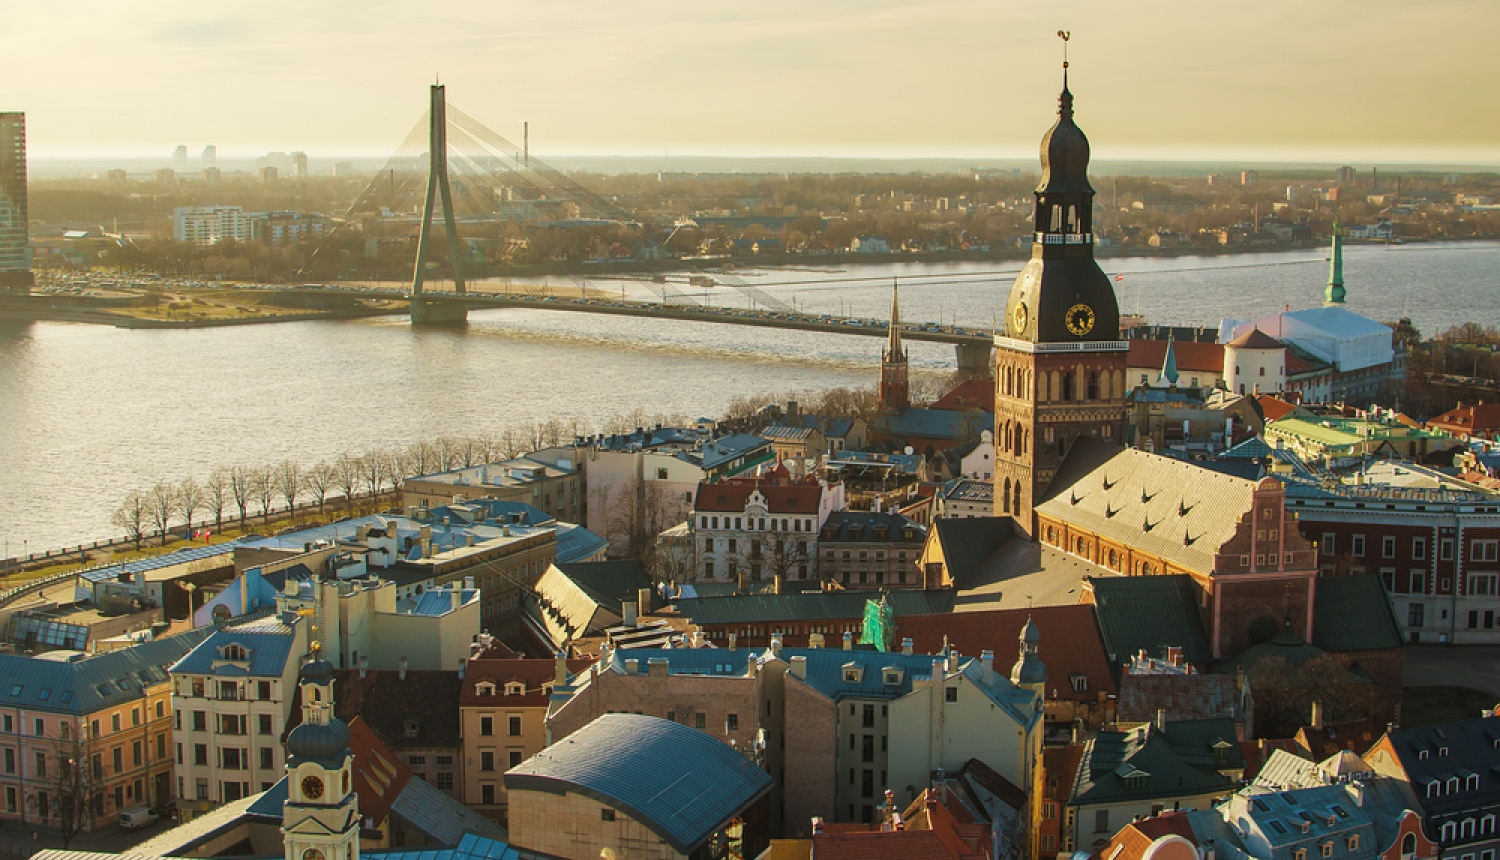 Rīgas panorāmas skats no augšas, redzama Vecrīga, Daugava un Vanšu tilts